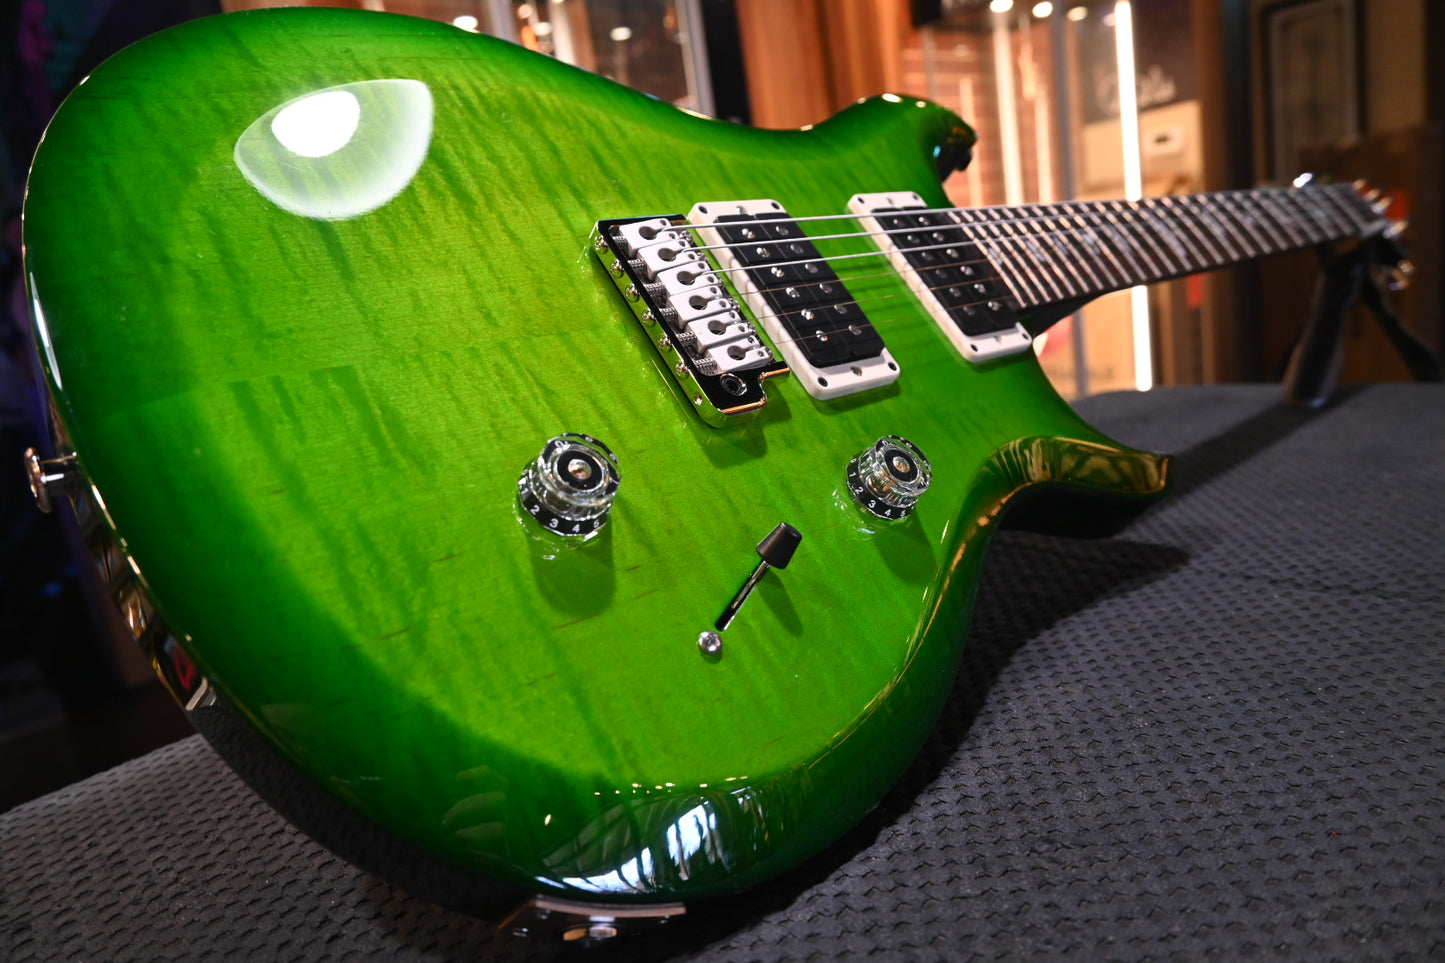 PRS 10th Anniversary S2 Custom 24 - Eriza Verde Guitar #1166 - Danville Music